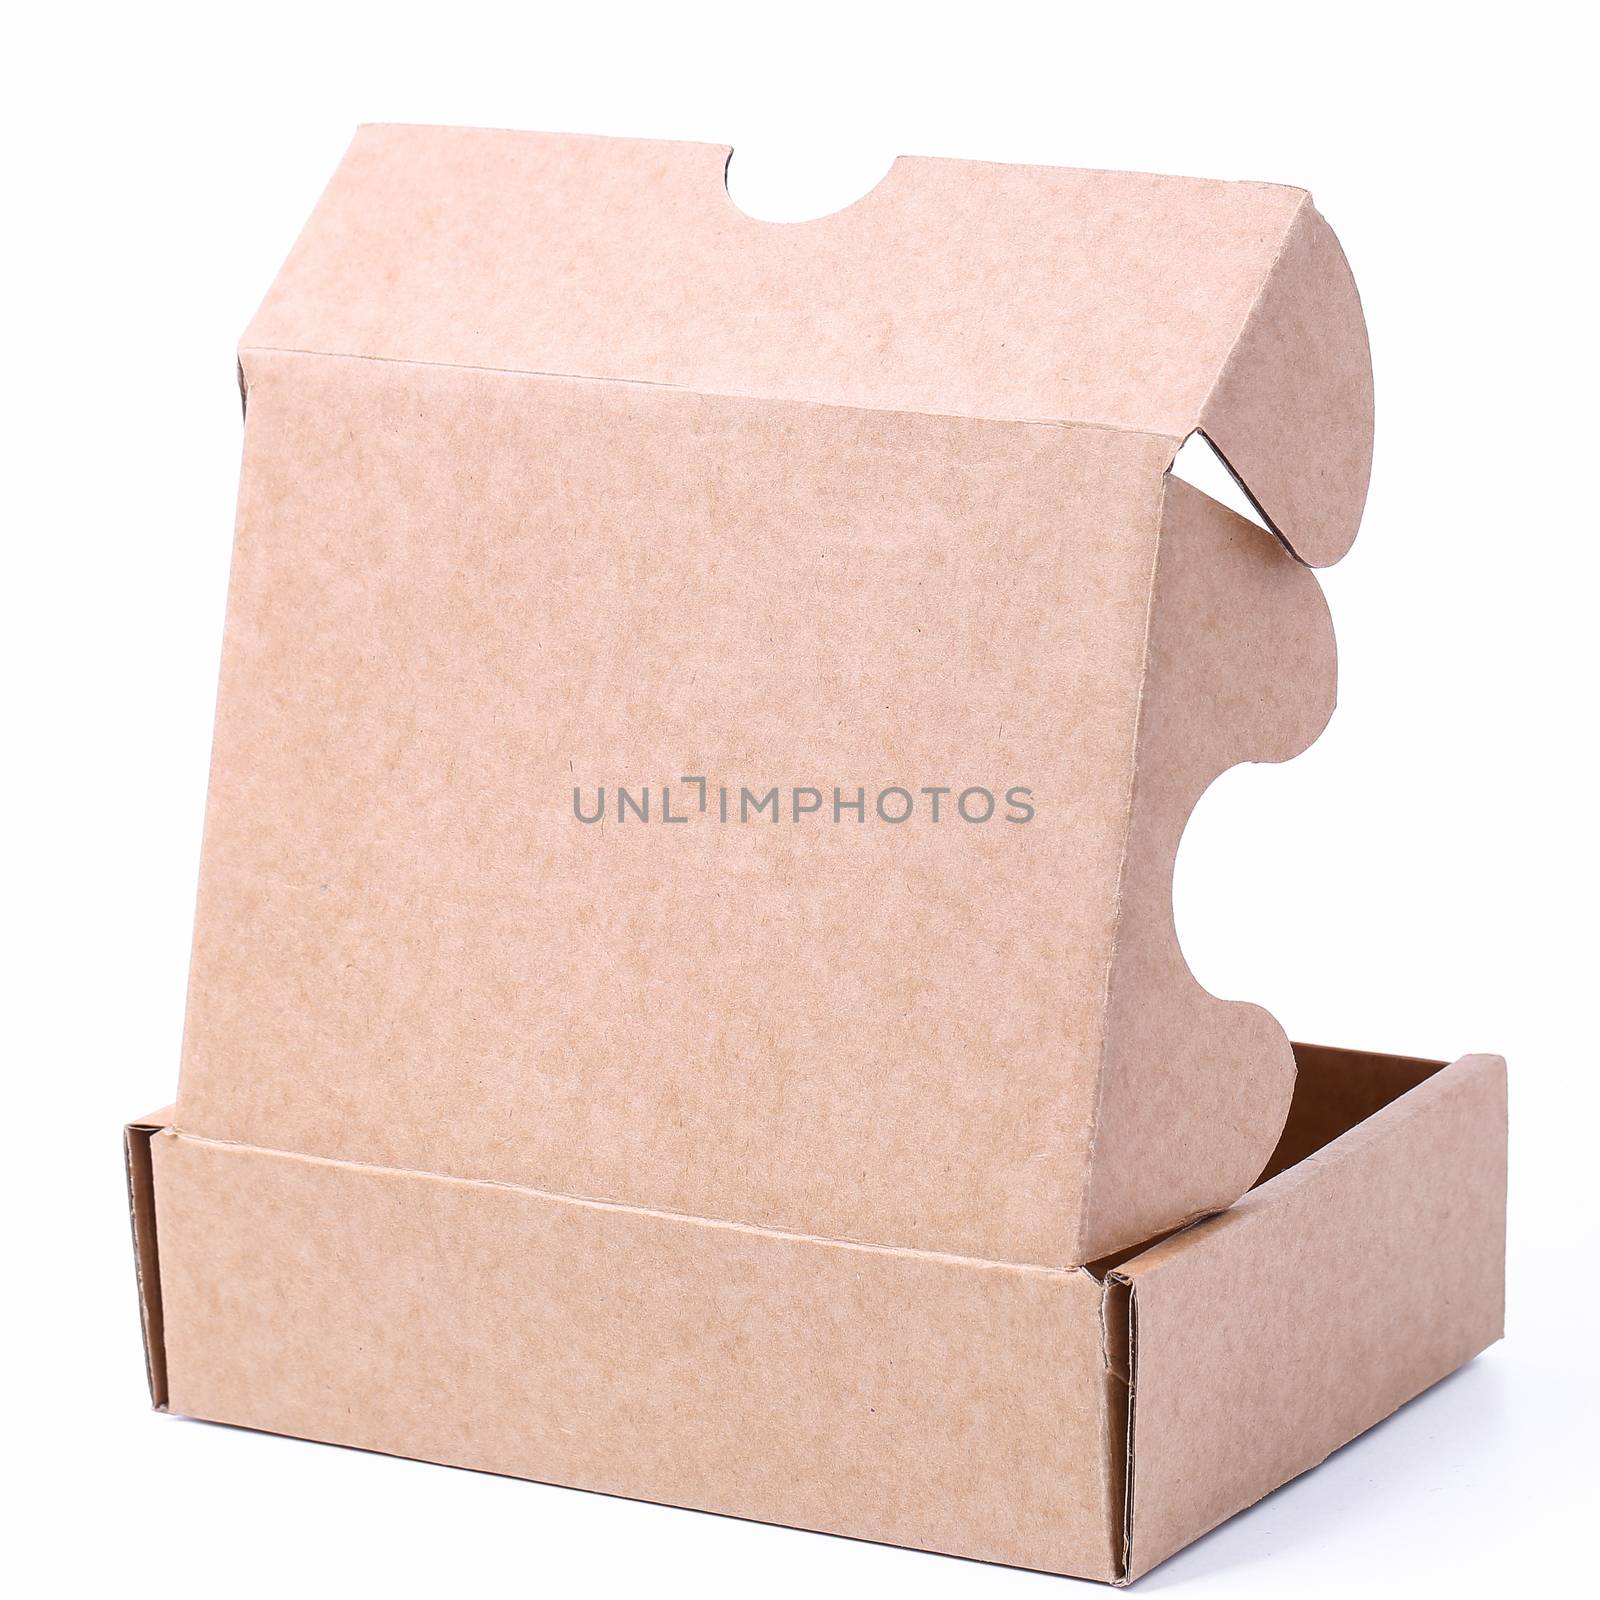 Carton boxes on a white background